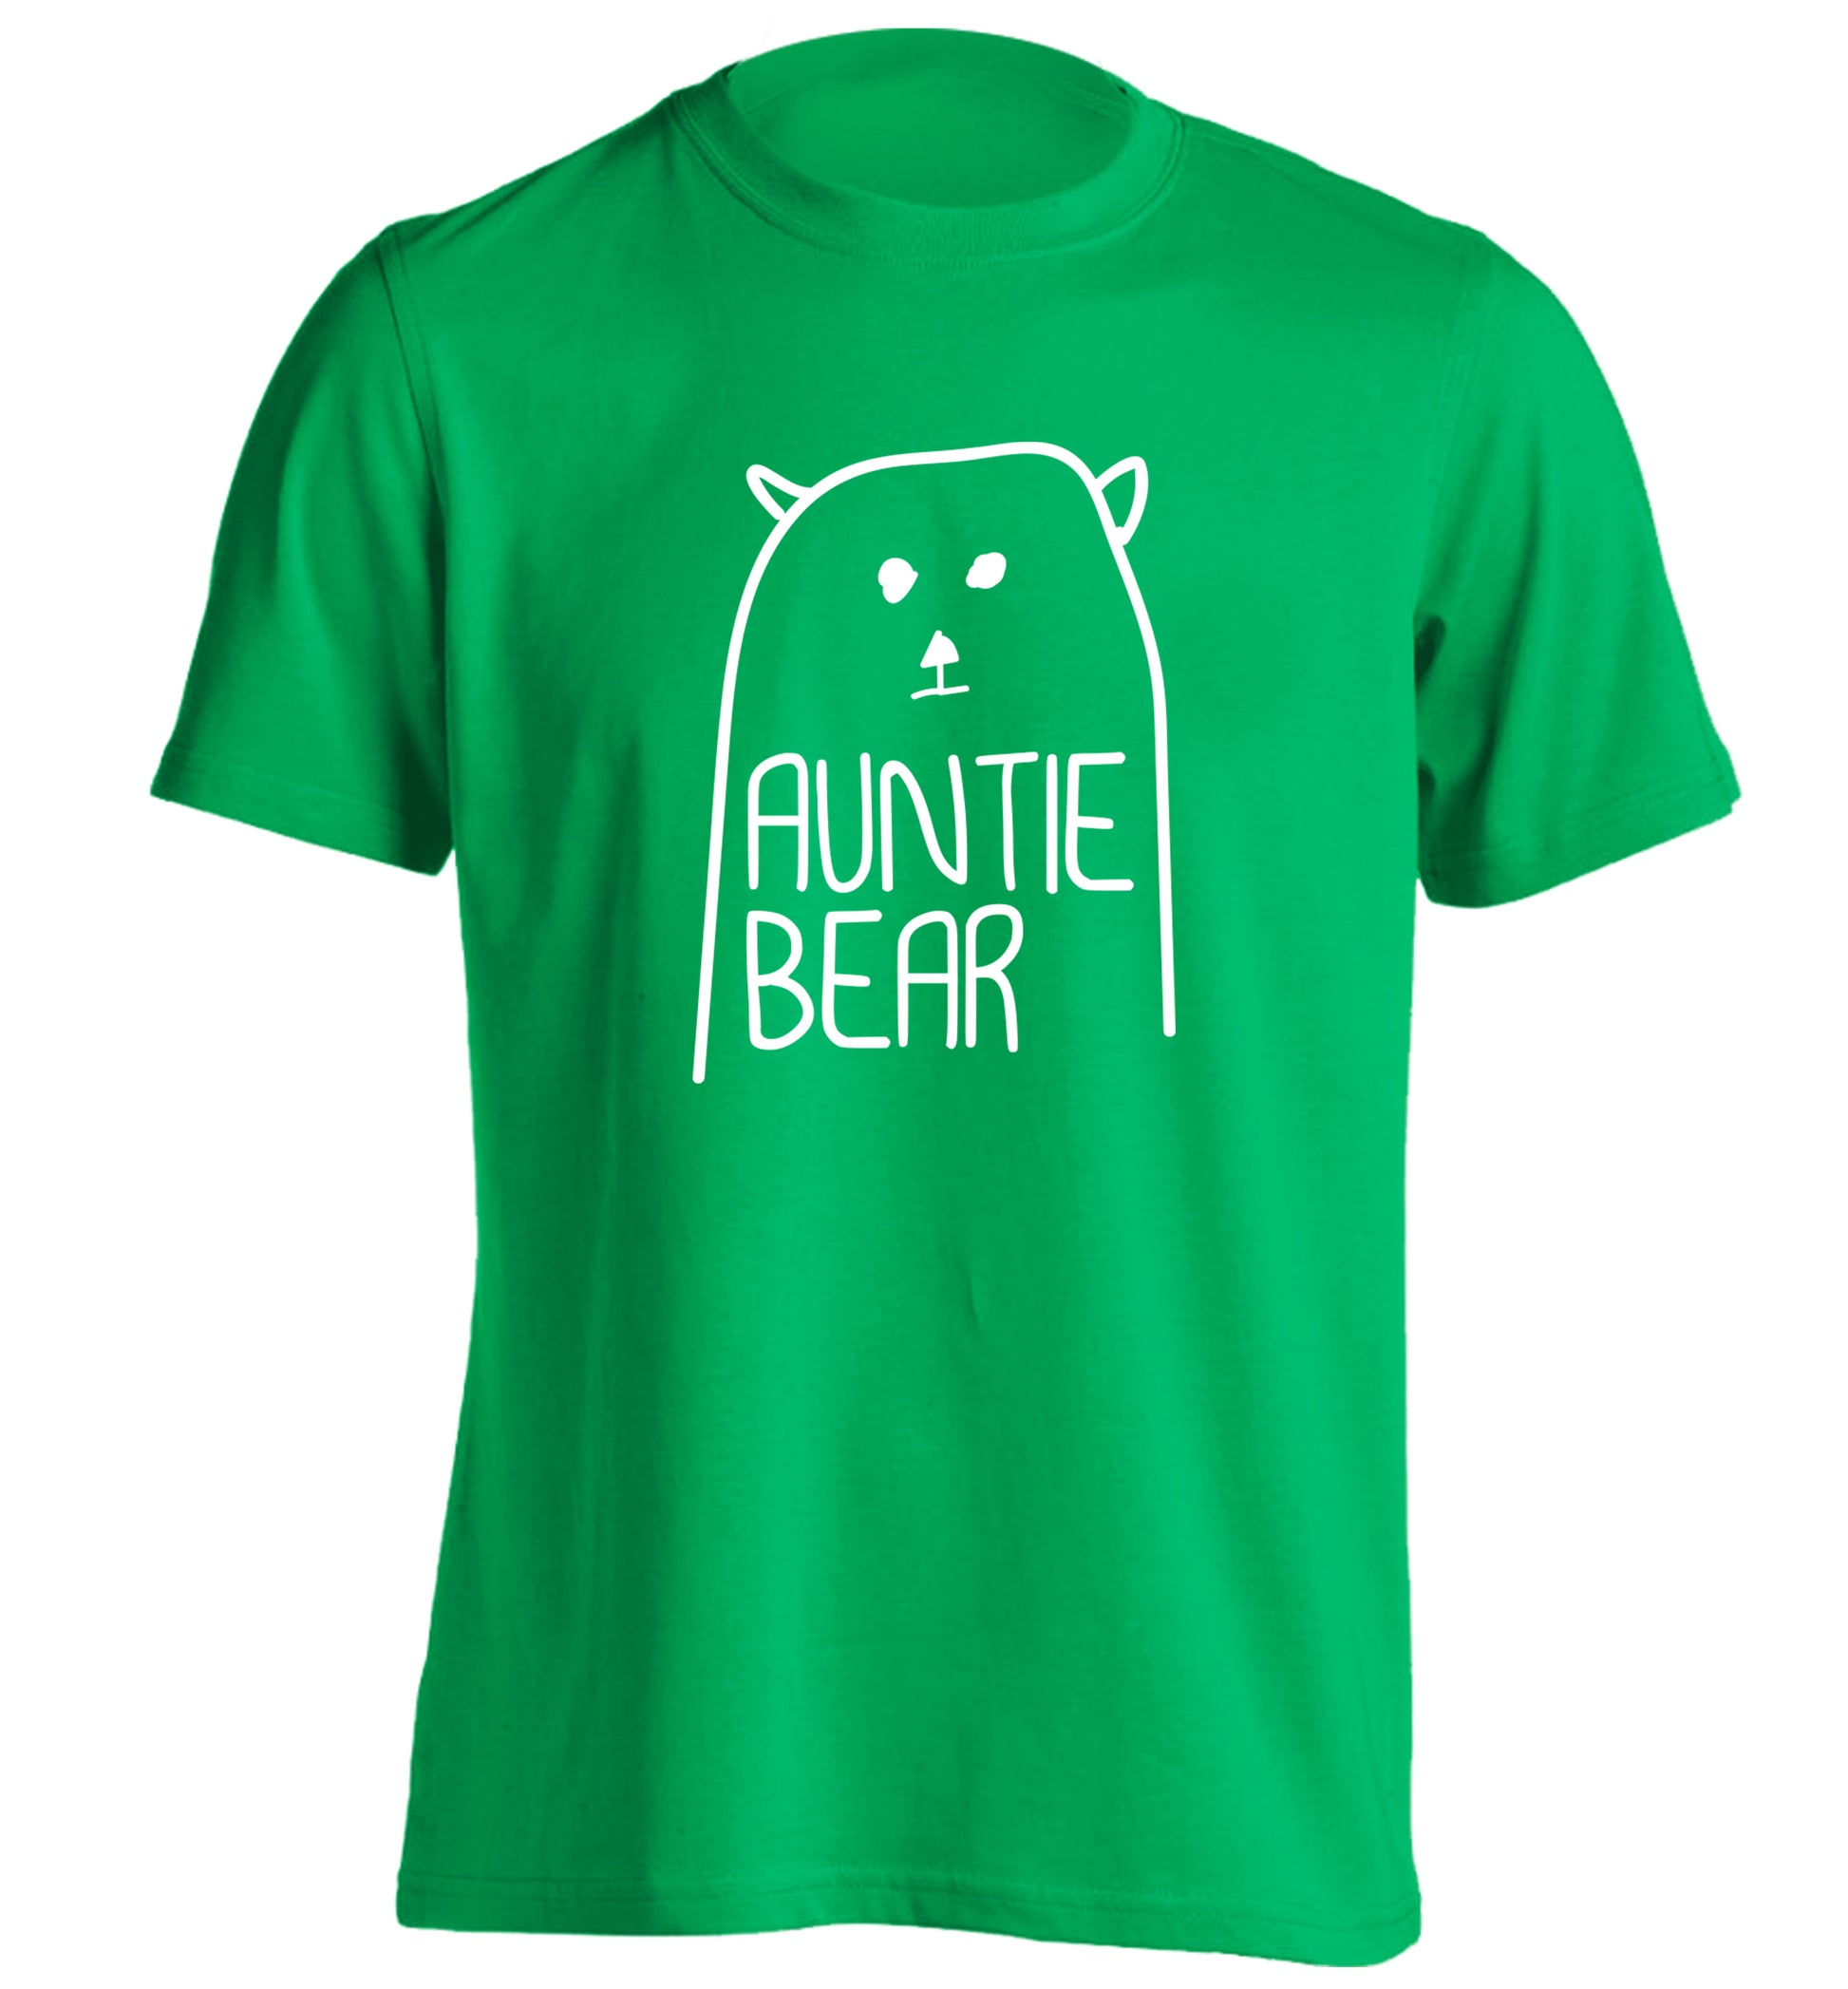 Auntie bear adults unisex green Tshirt 2XL